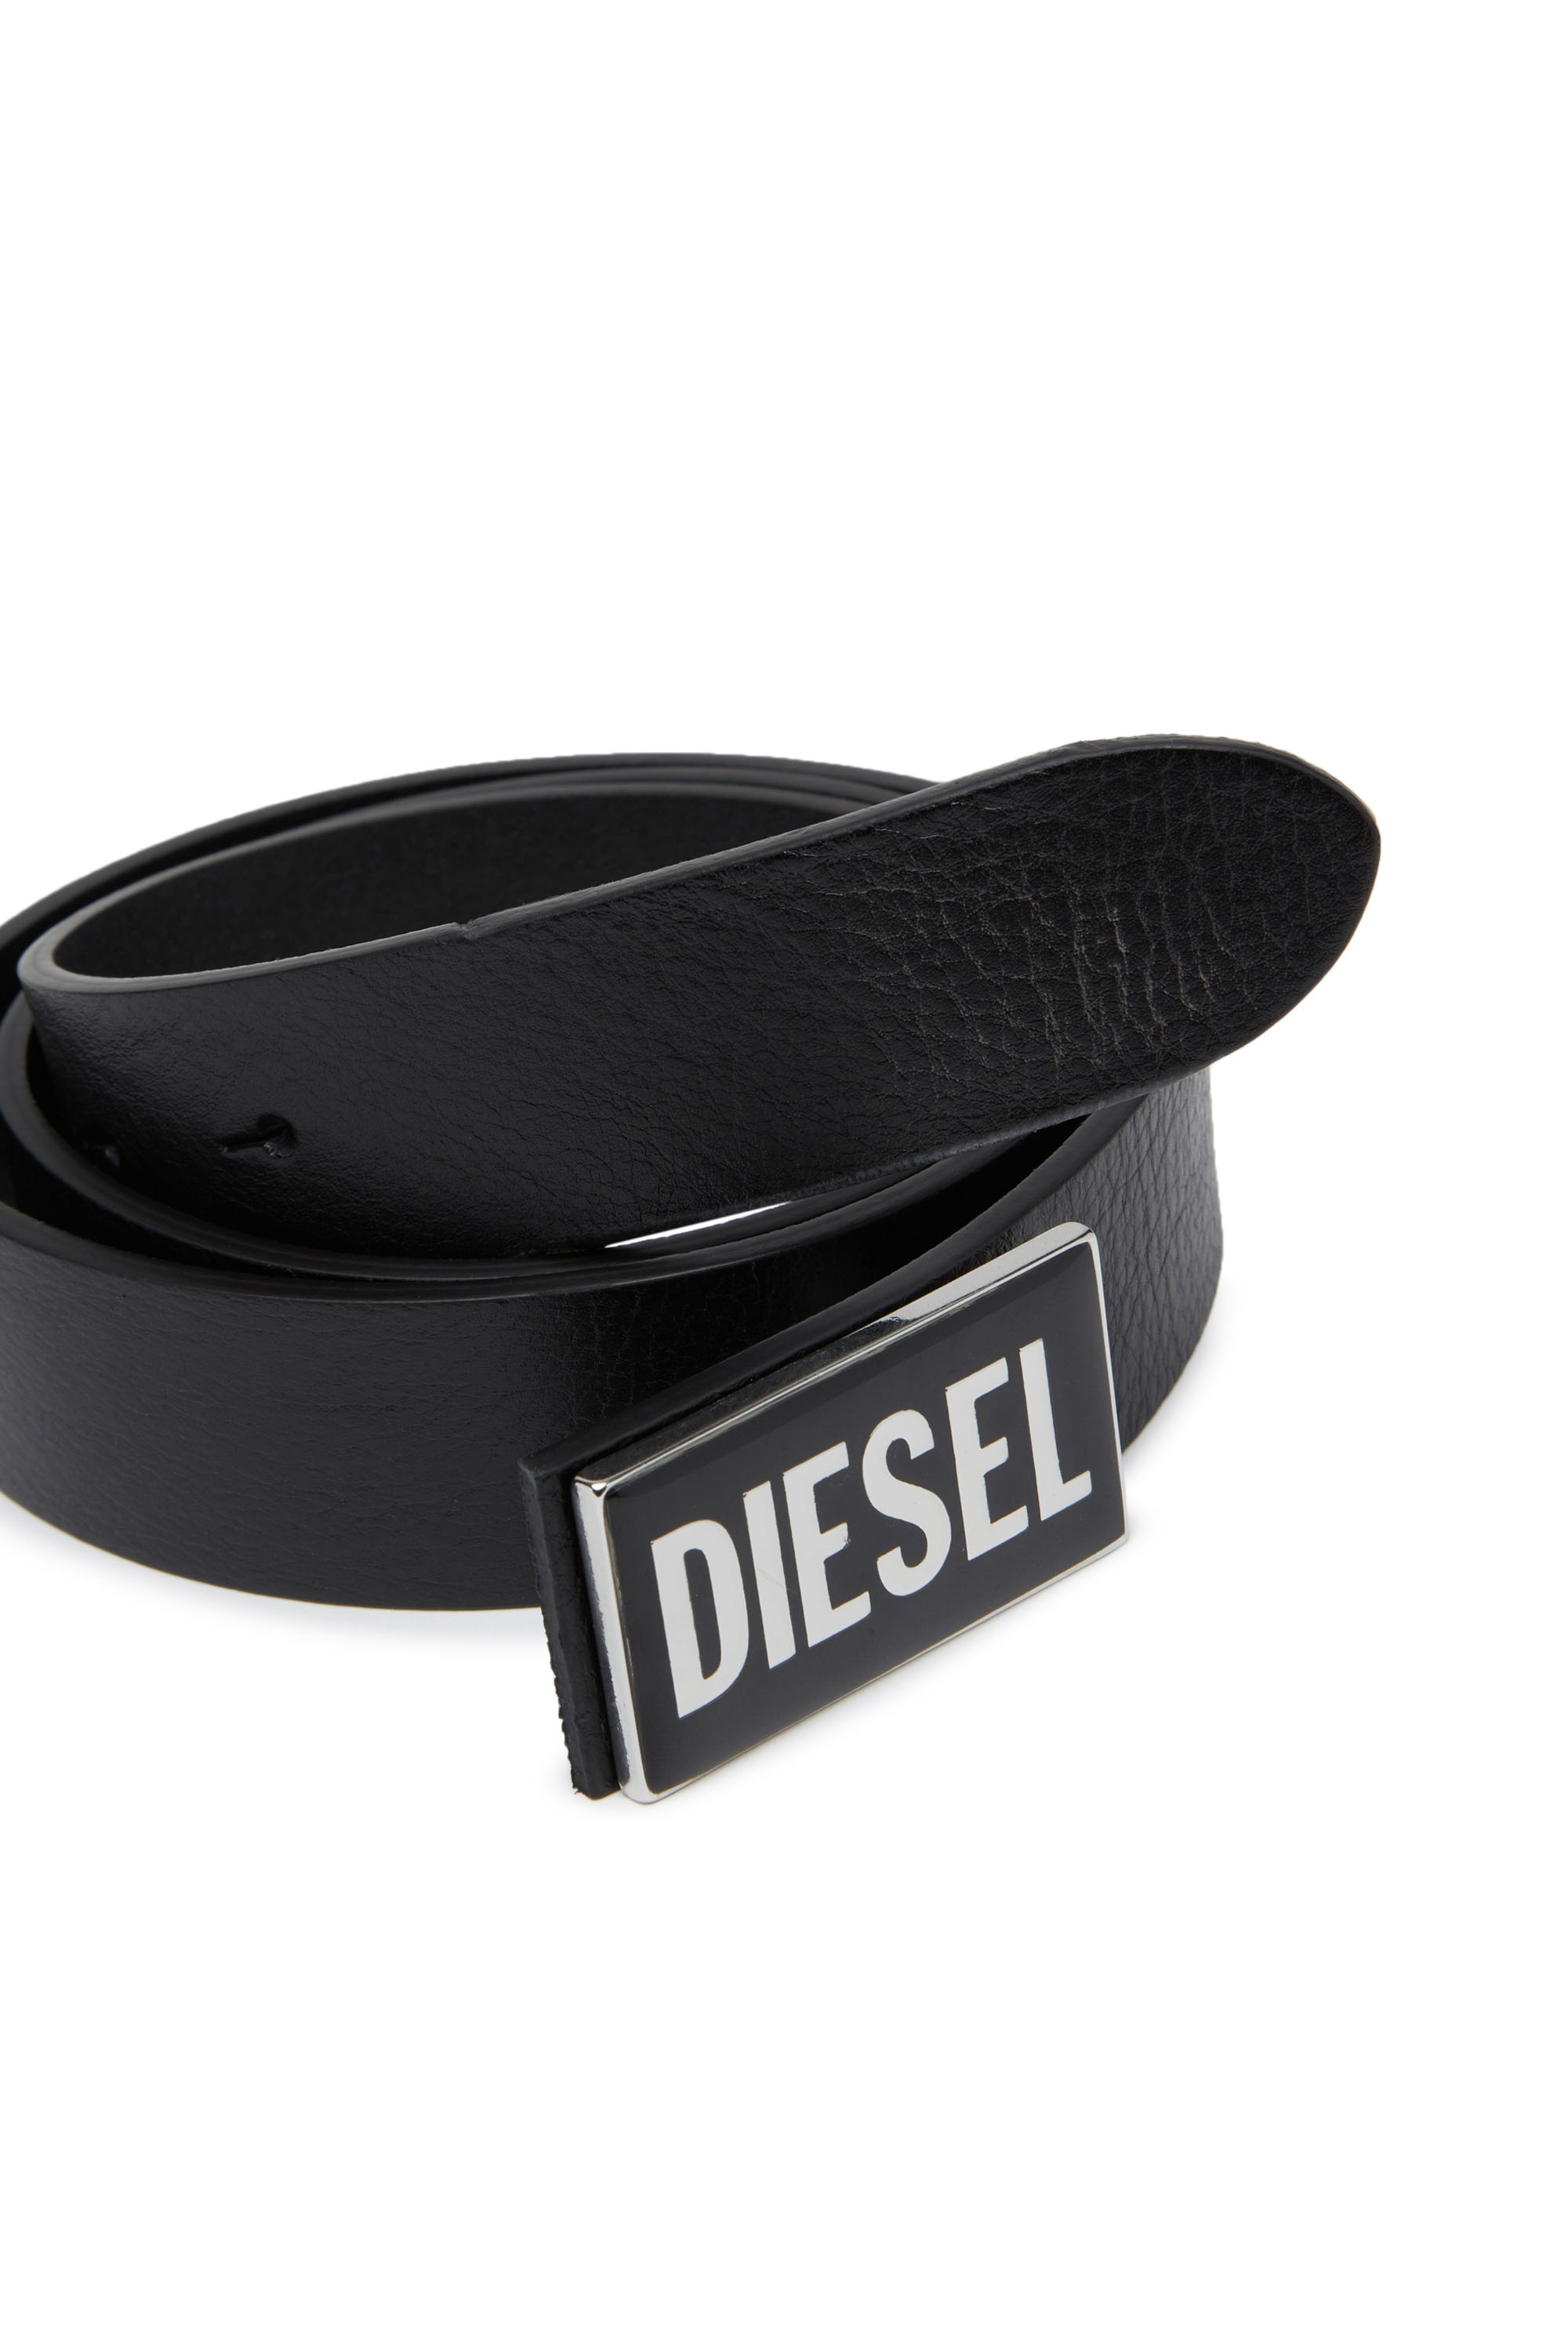 Diesel - B-GLOSSY, Noir - Image 3